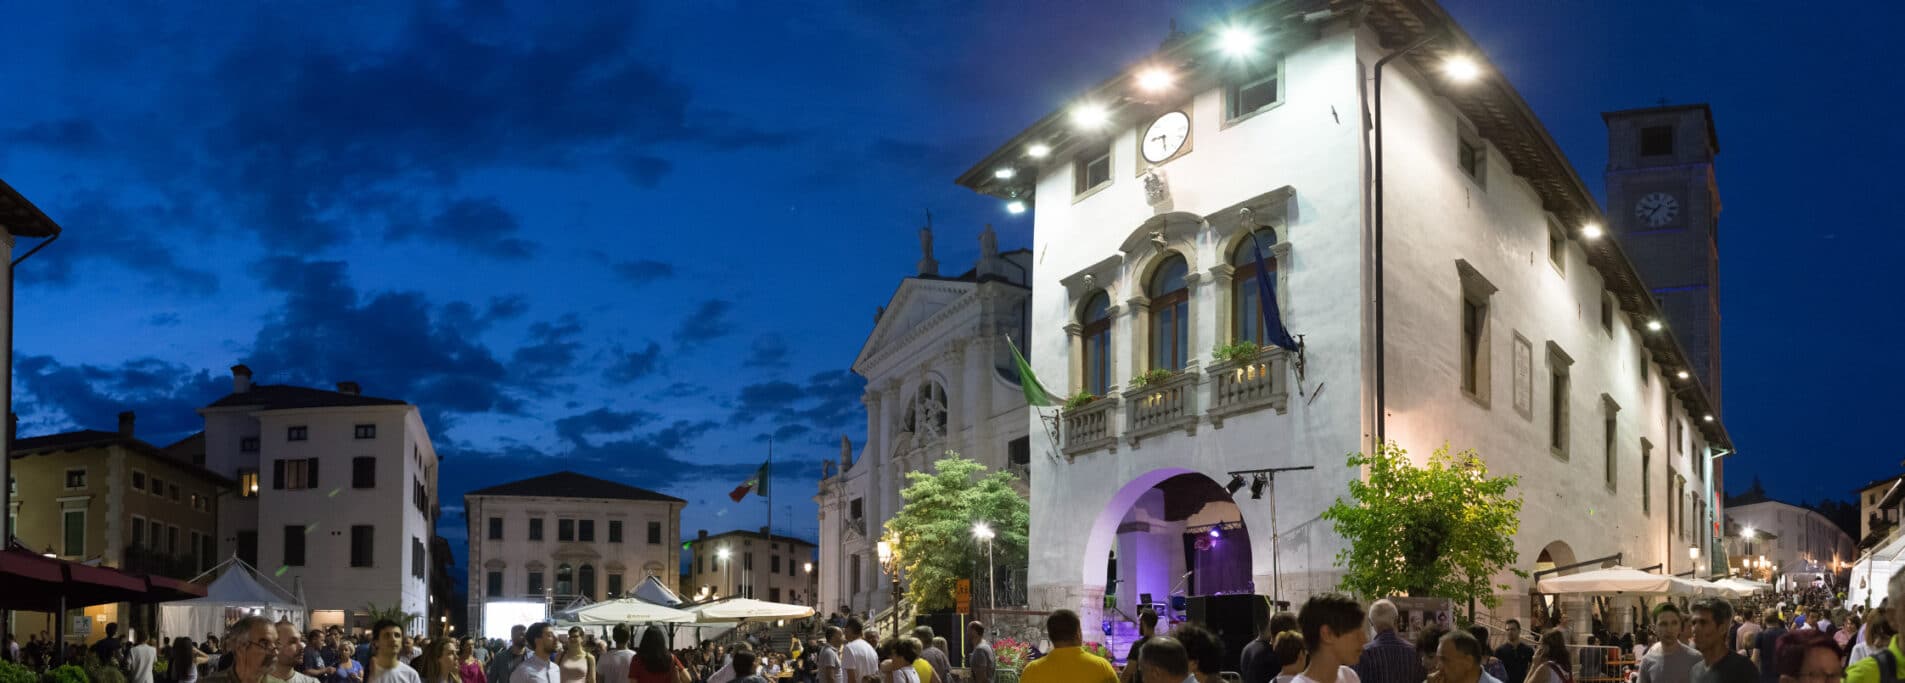 ‘Aria di Festa’: June 2021 event cancelled